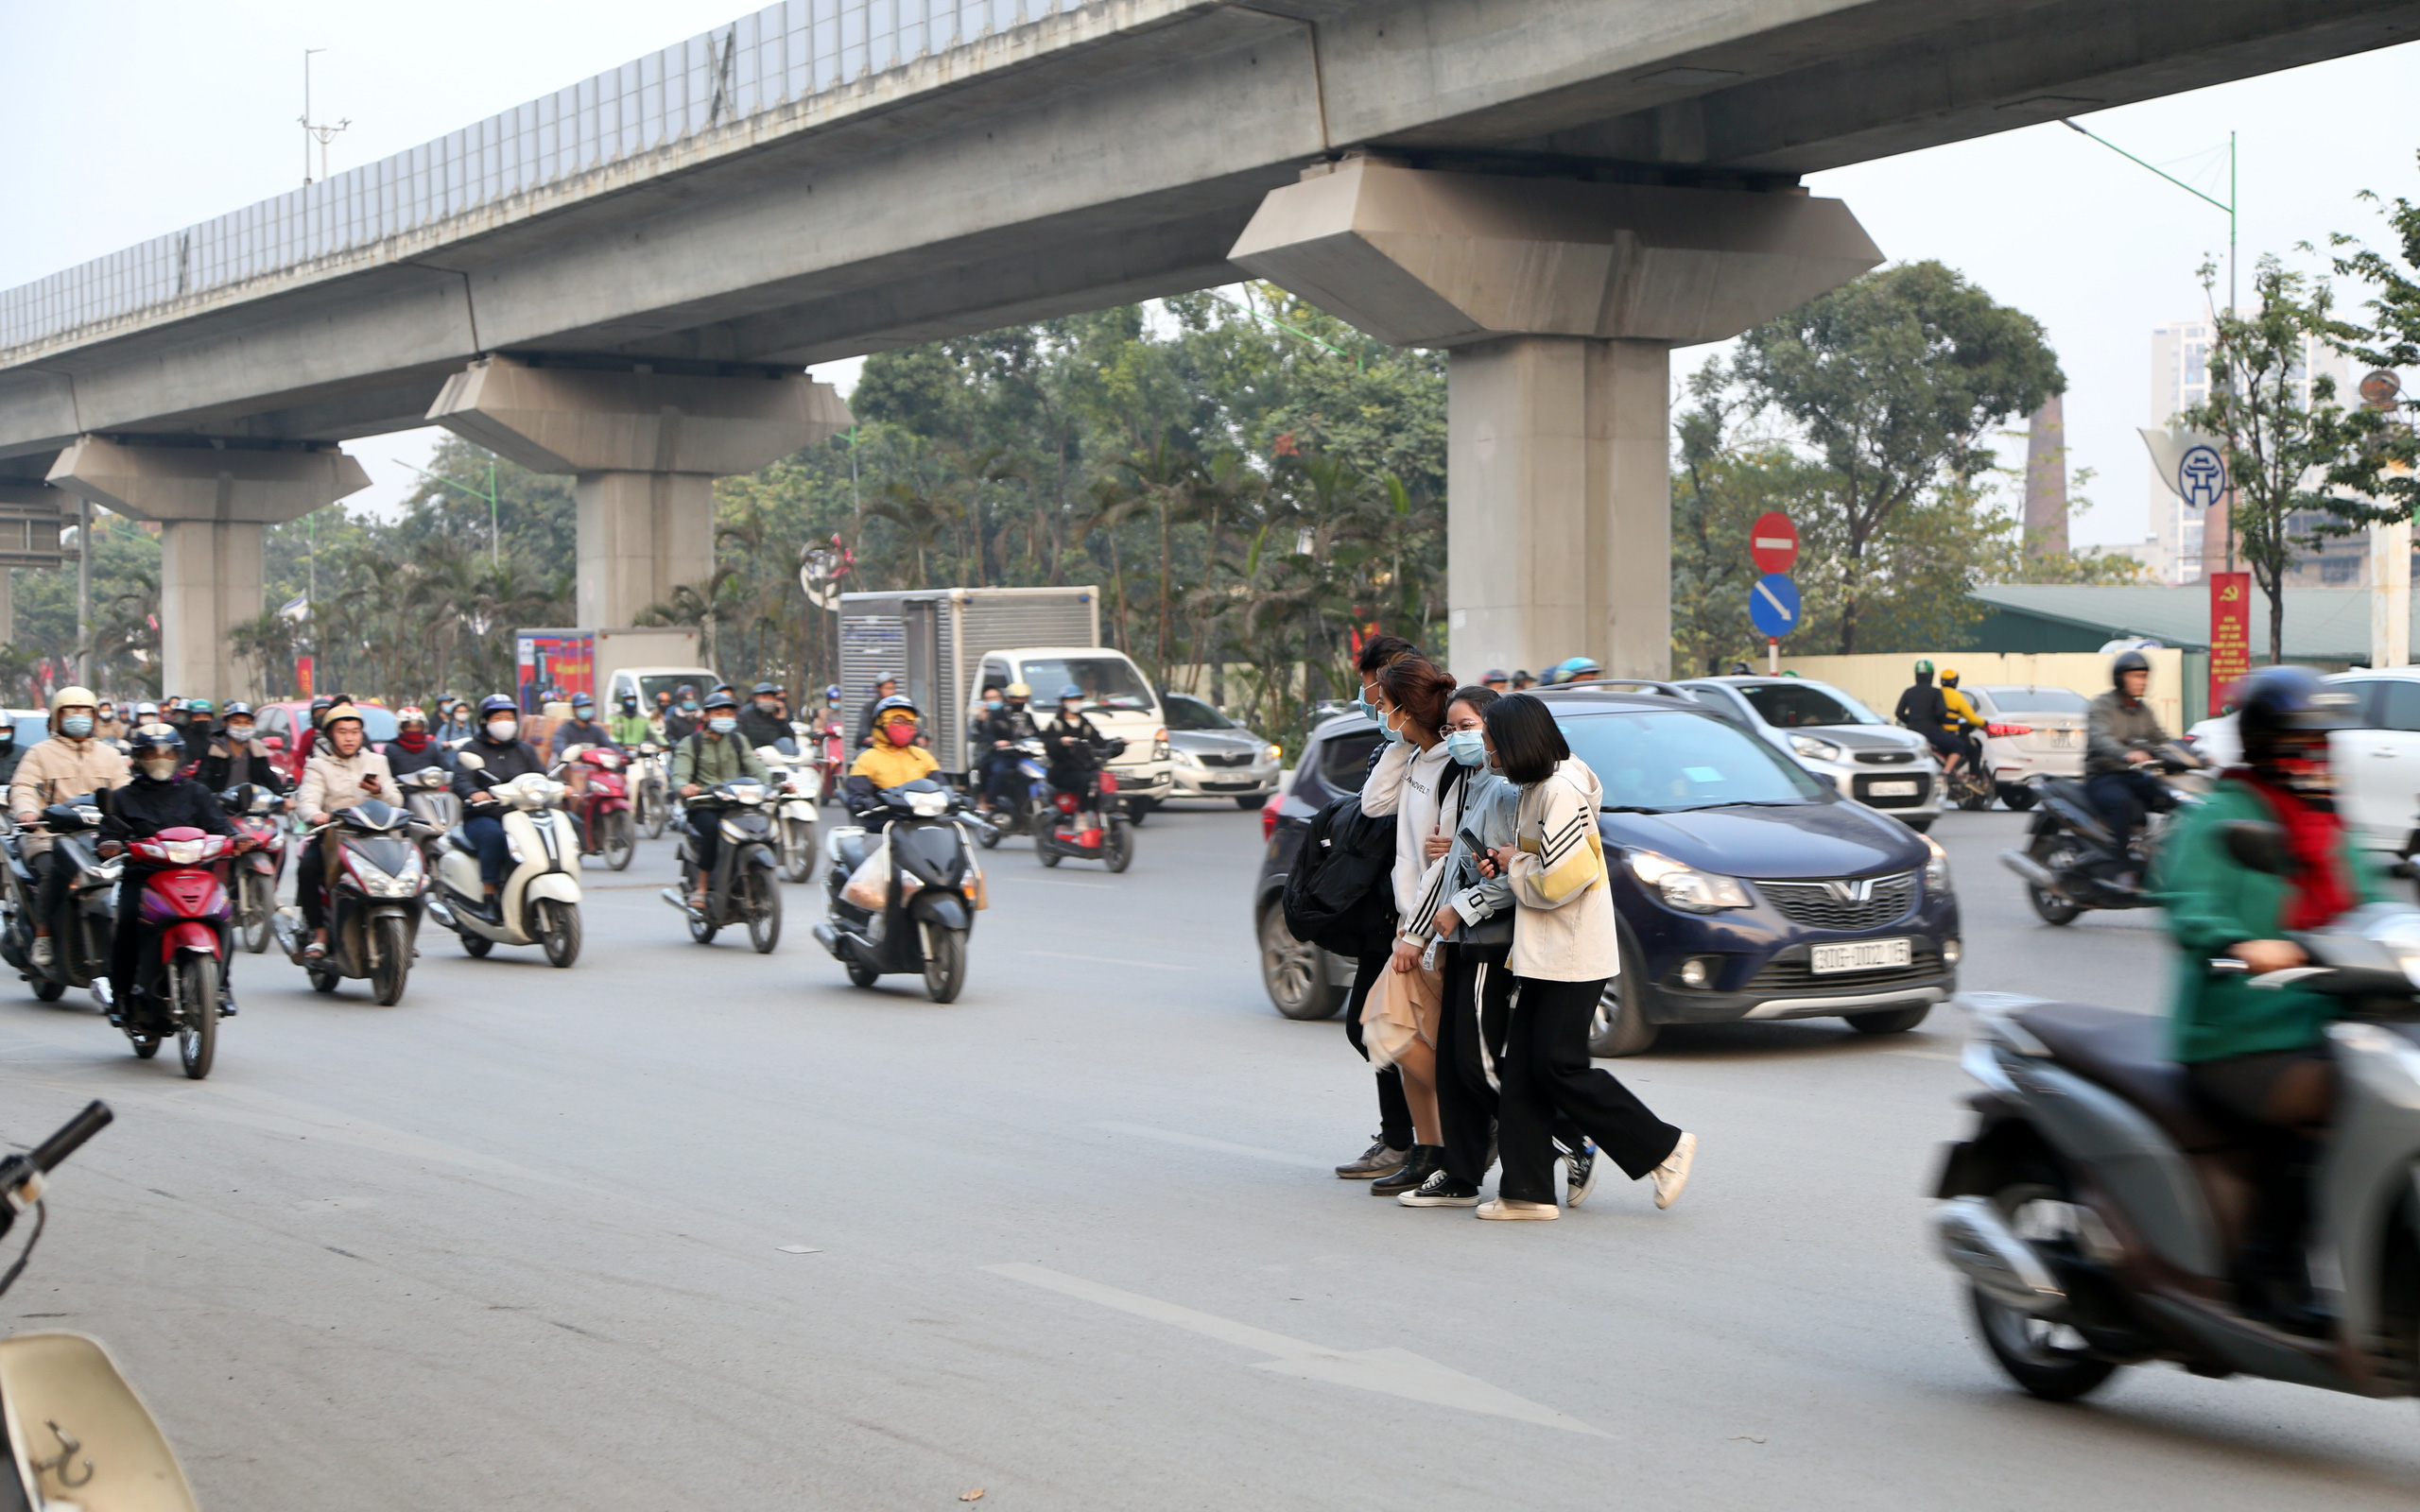 Hà Nội: Sau vụ tai nạn khiến 2 nạn nhân tử vong thương tâm, nhiều người vẫn bất chấp băng qua dòng xe như mắc cửi trên đường Nguyễn Trãi